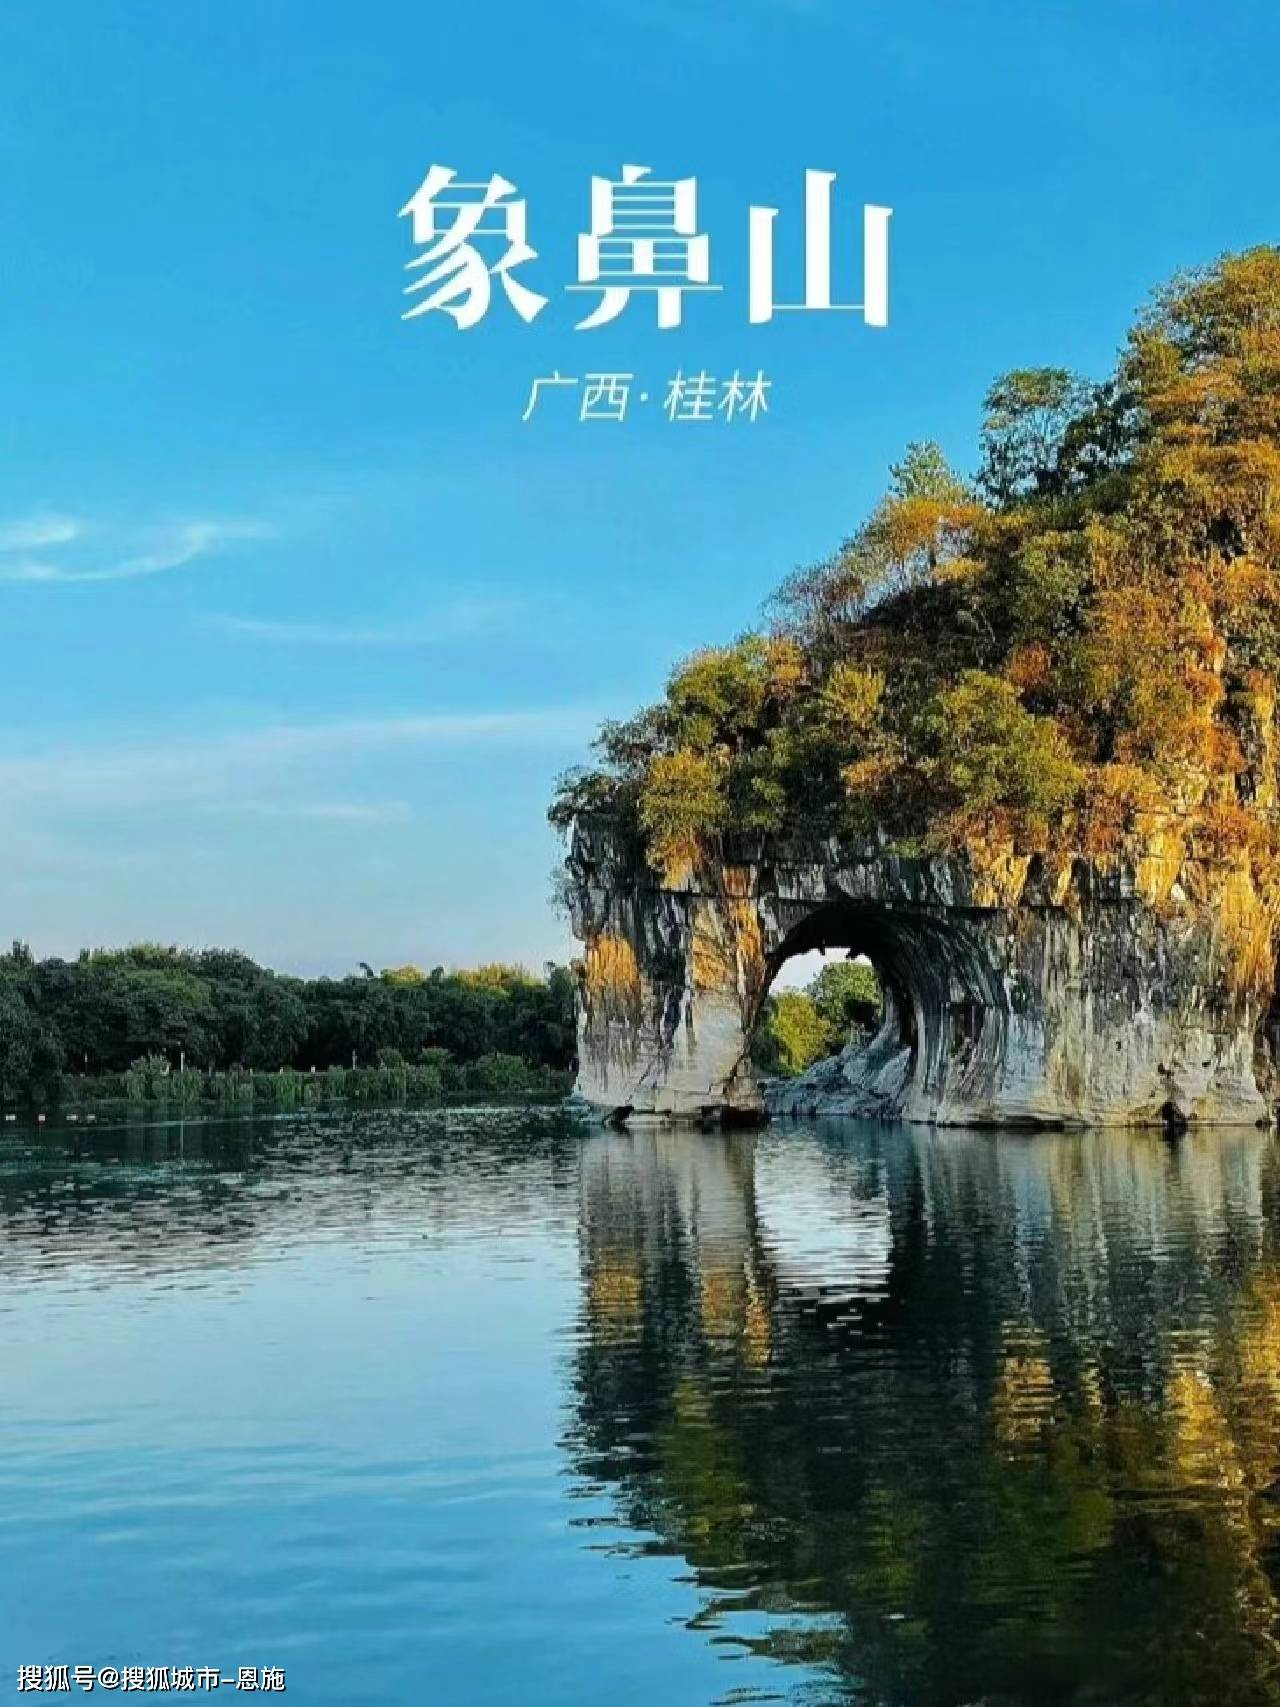 桂林三日游跟团多少钱一个人?桂林必去旅游景点都有哪些,一起来看看吧